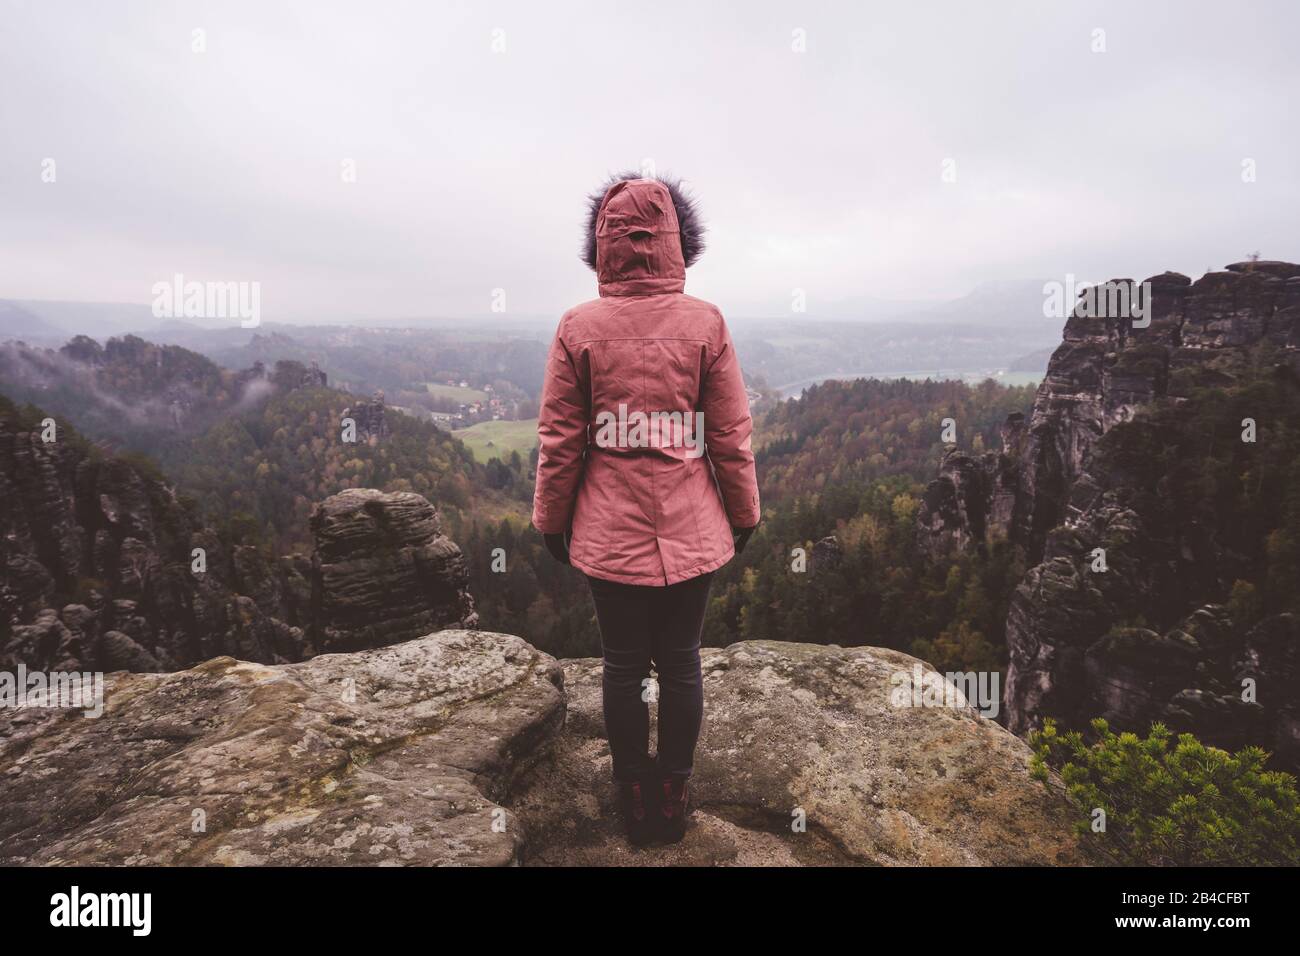 Junge Frau in winterlicher Kleidung im Freien, die allein auf einem Berg steht und die Aussicht genießt, Reiselebensstil-Harmoniekonzept, Rückansicht Stock Photo